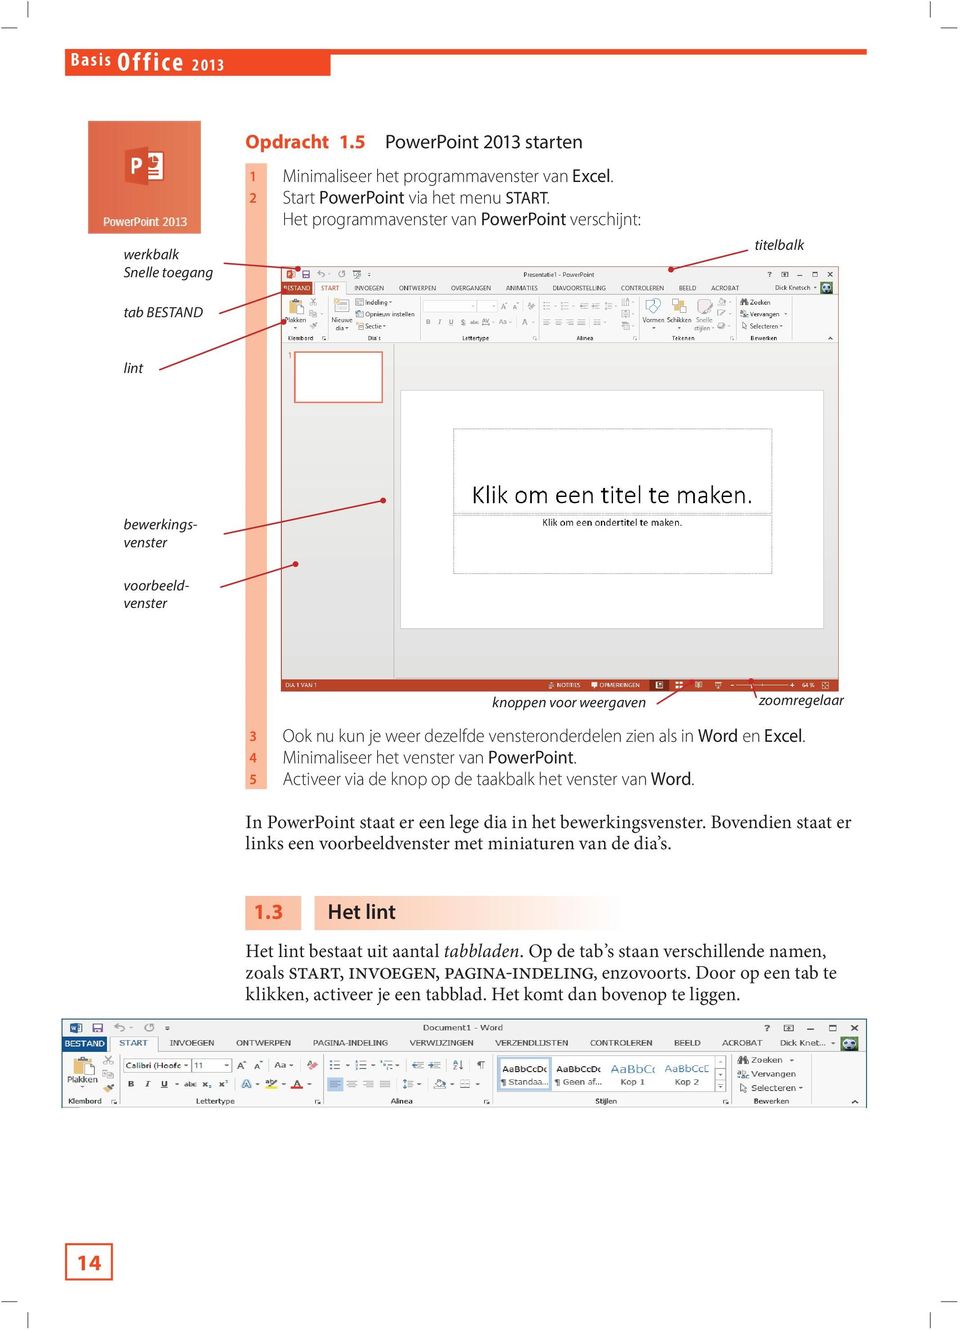 als in Word en Excel. 4 Minimaliseer het venster van PowerPoint. 5 Activeer via de knop op de taakbalk het venster van Word. In PowerPoint staat er een lege dia in het bewerkingsvenster.